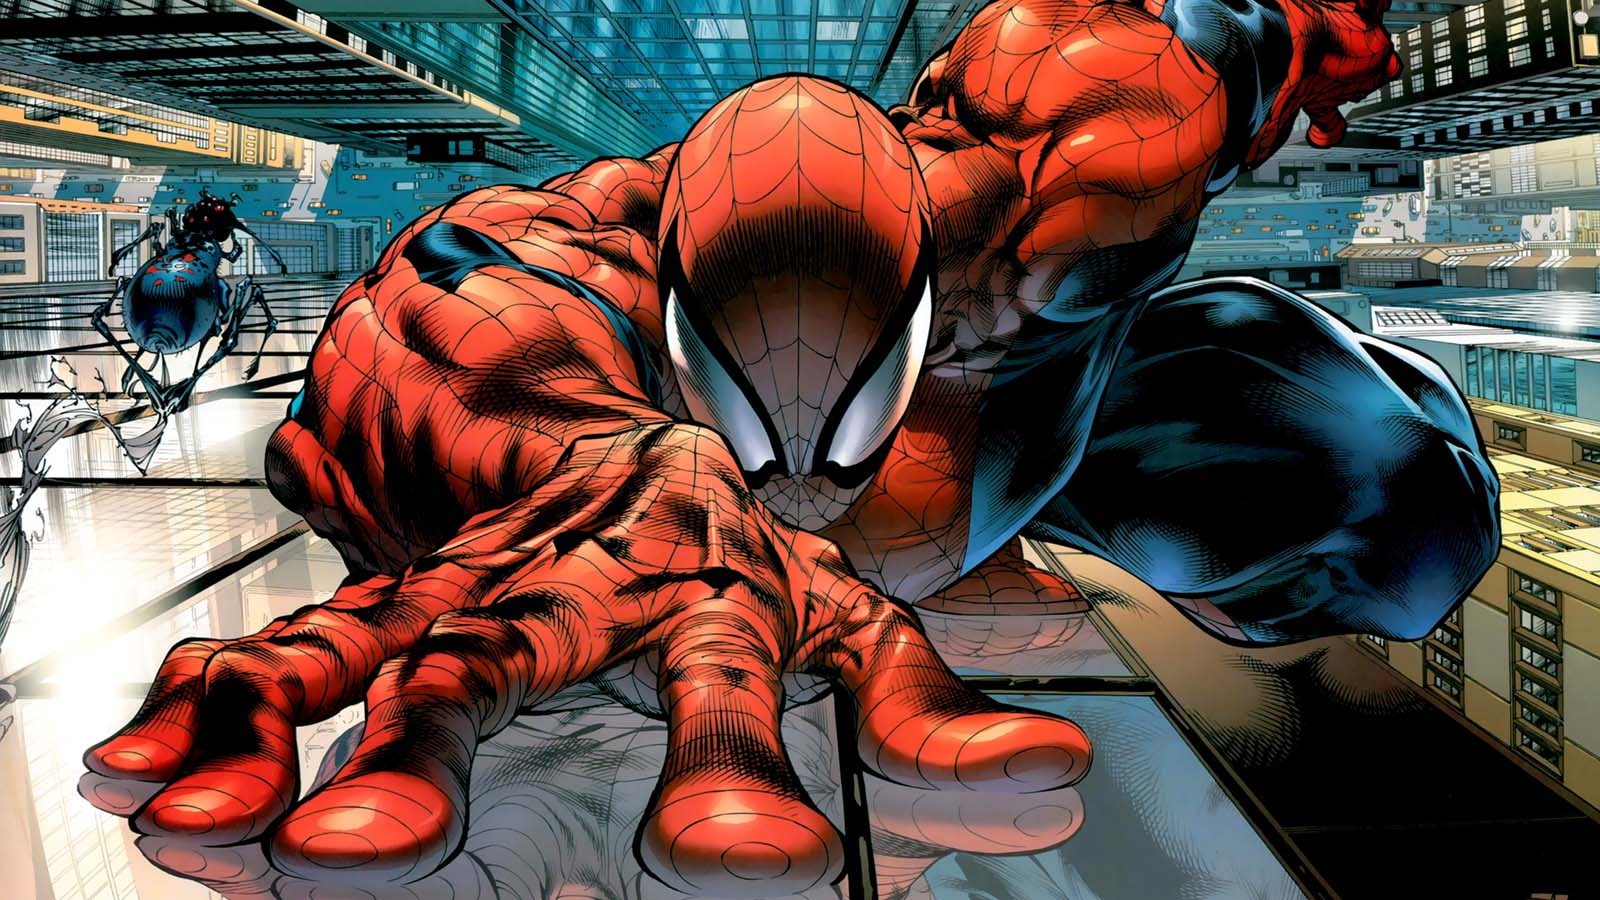 marvel comics wallpaper hd,spider man,superhero,fictional character,comics,fiction